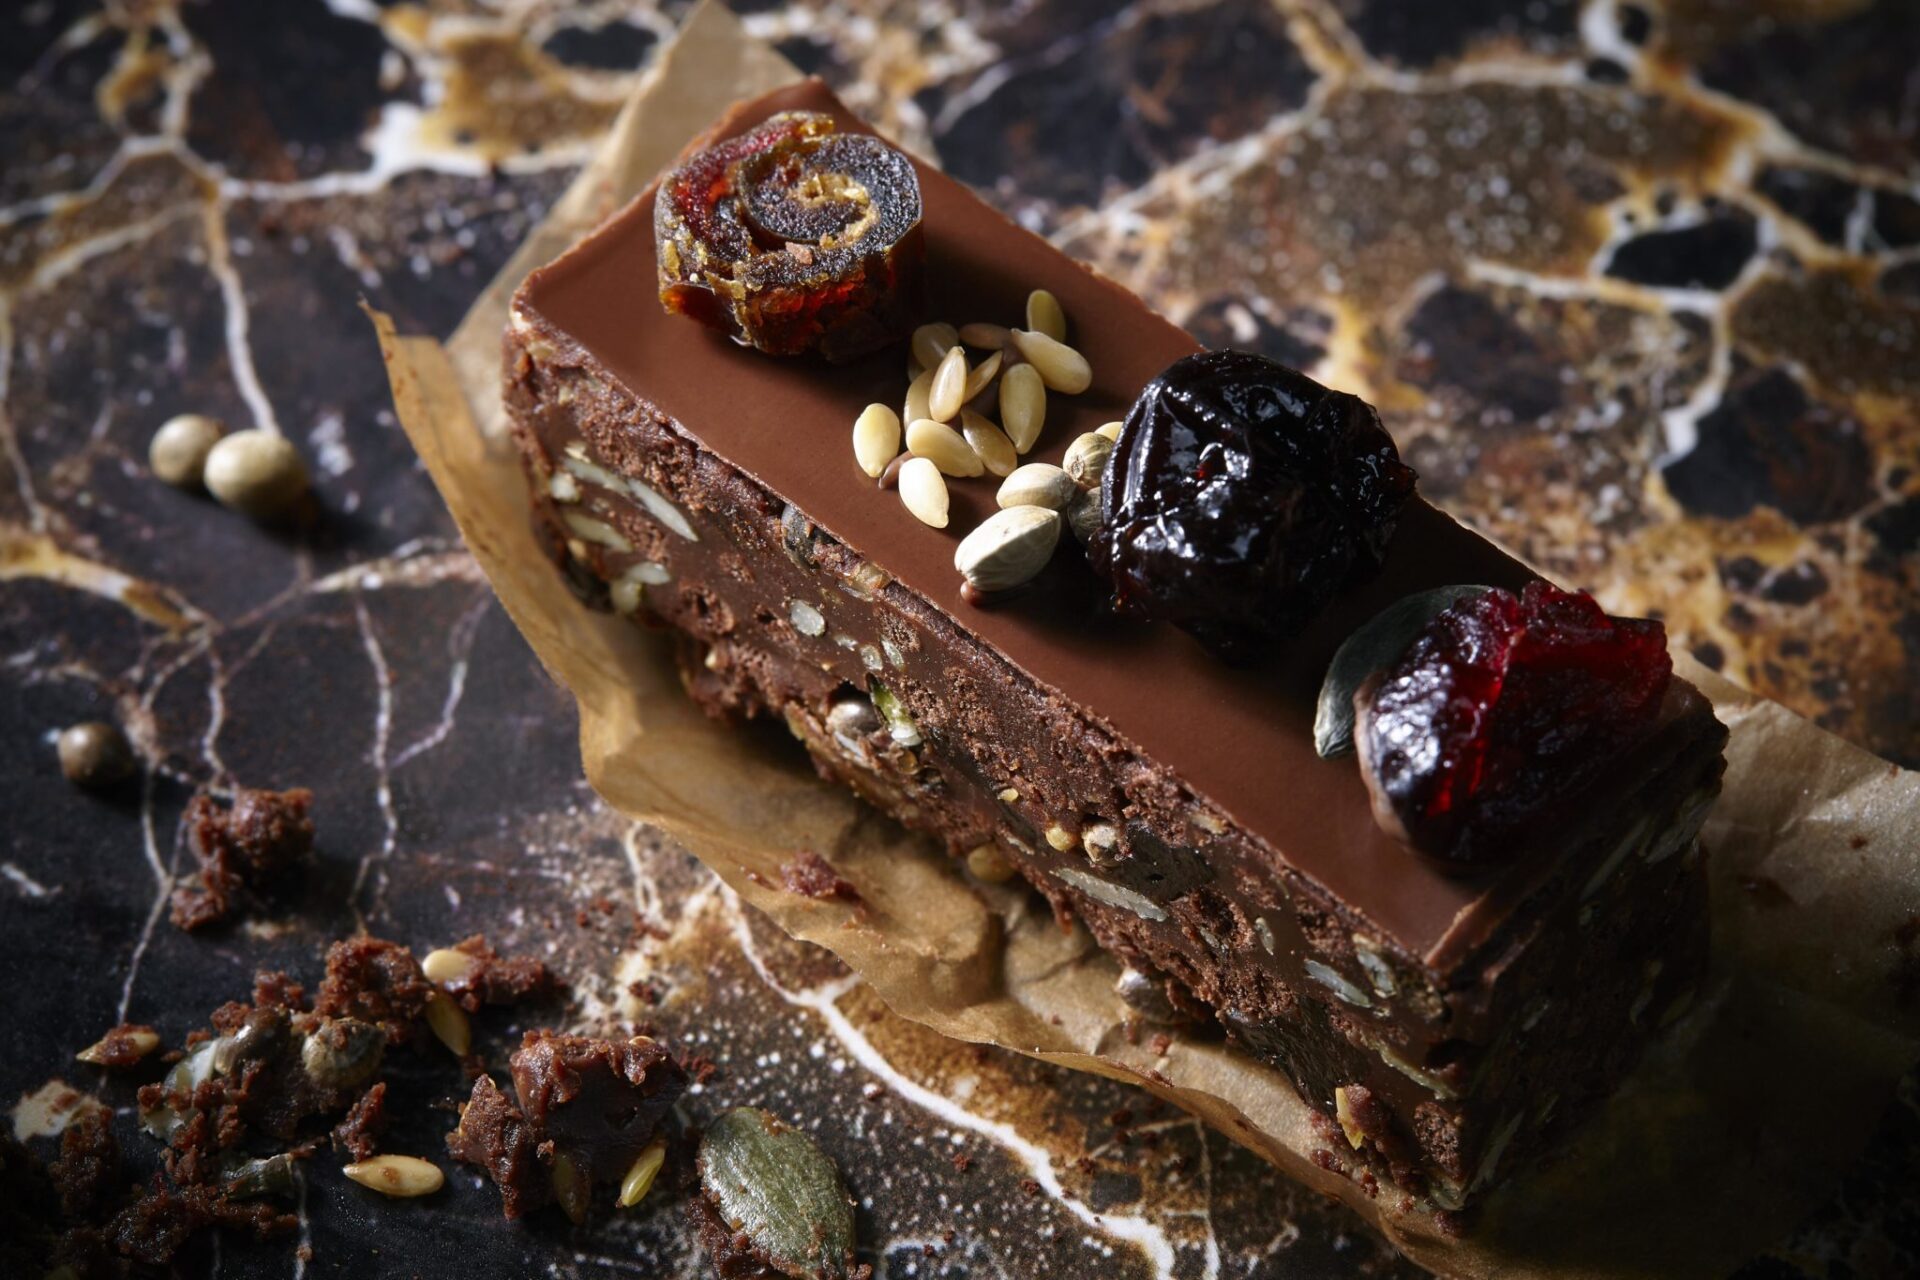 Chocolate Academy per Milano Food City presenta la ricetta Pane & Cioccolato a basso contenuto calorico